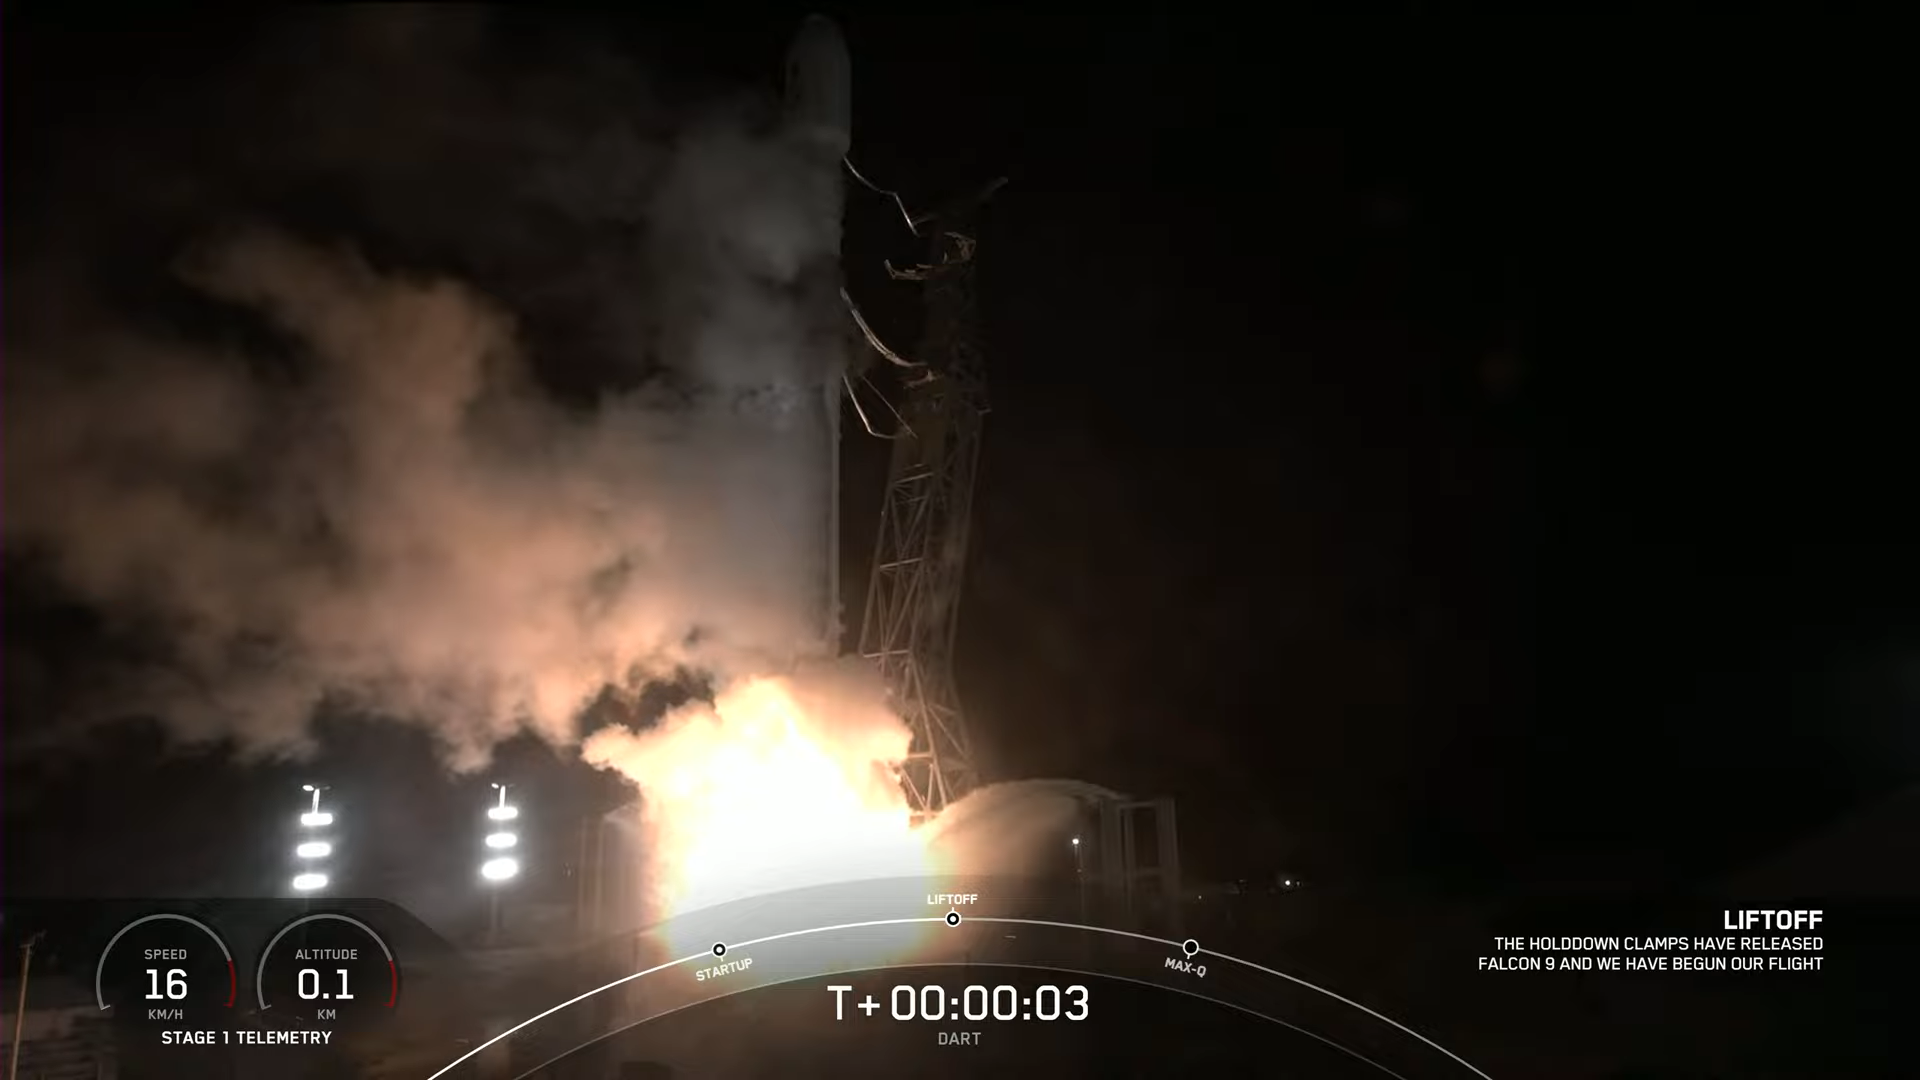 DART, è iniziata la prima missione di test per la Difesa Planetaria contro possibili minacce asteroidali contro la nostra Terra, video by SpaceX!